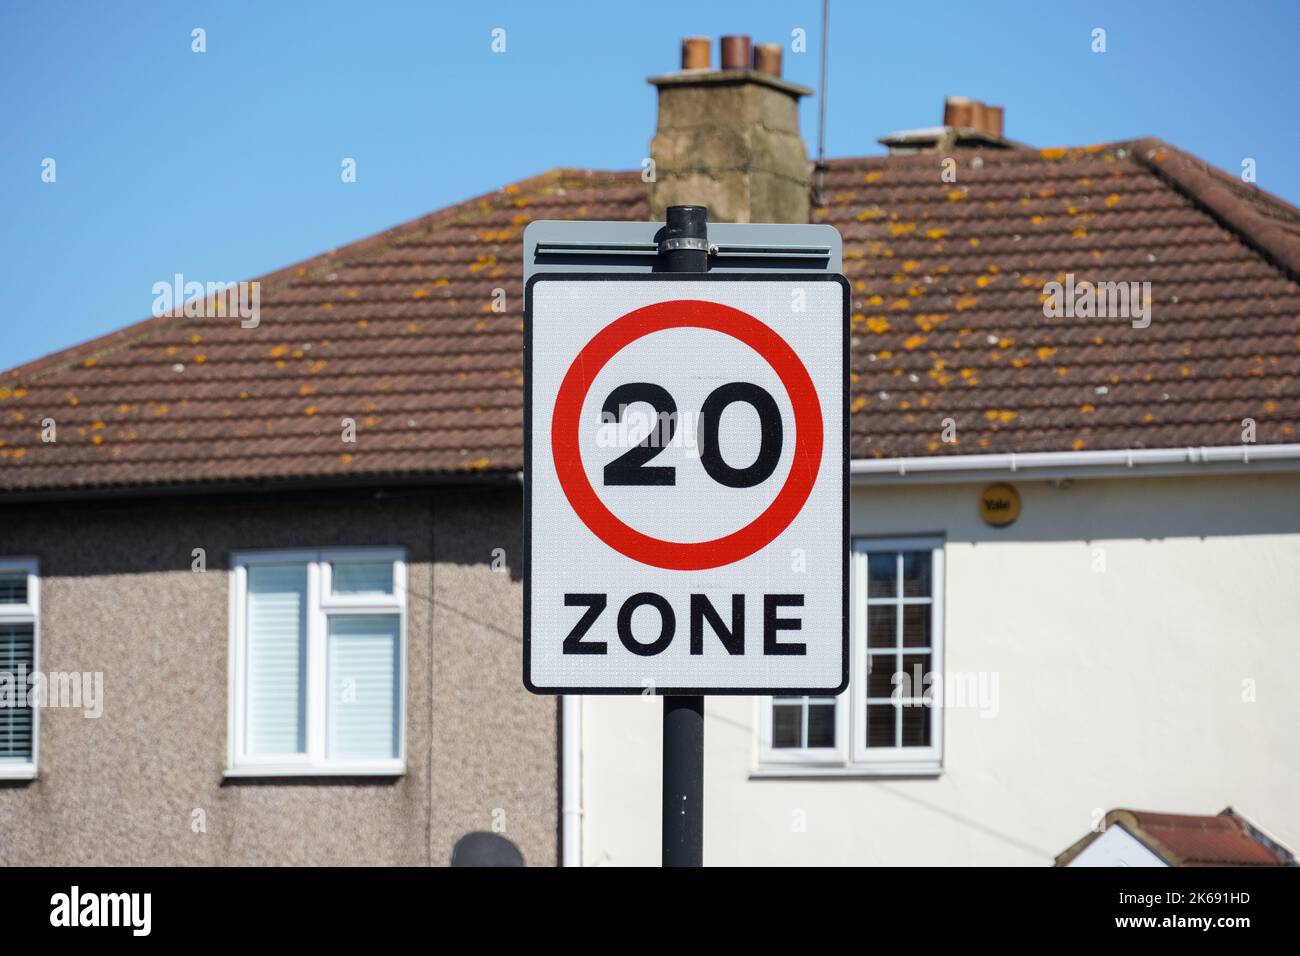 Straßenschild mit Geschwindigkeitsbegrenzung für 20 mph Meilen pro Stunde in einem Wohngebiet, London England Vereinigtes Königreich Großbritannien Stockfoto